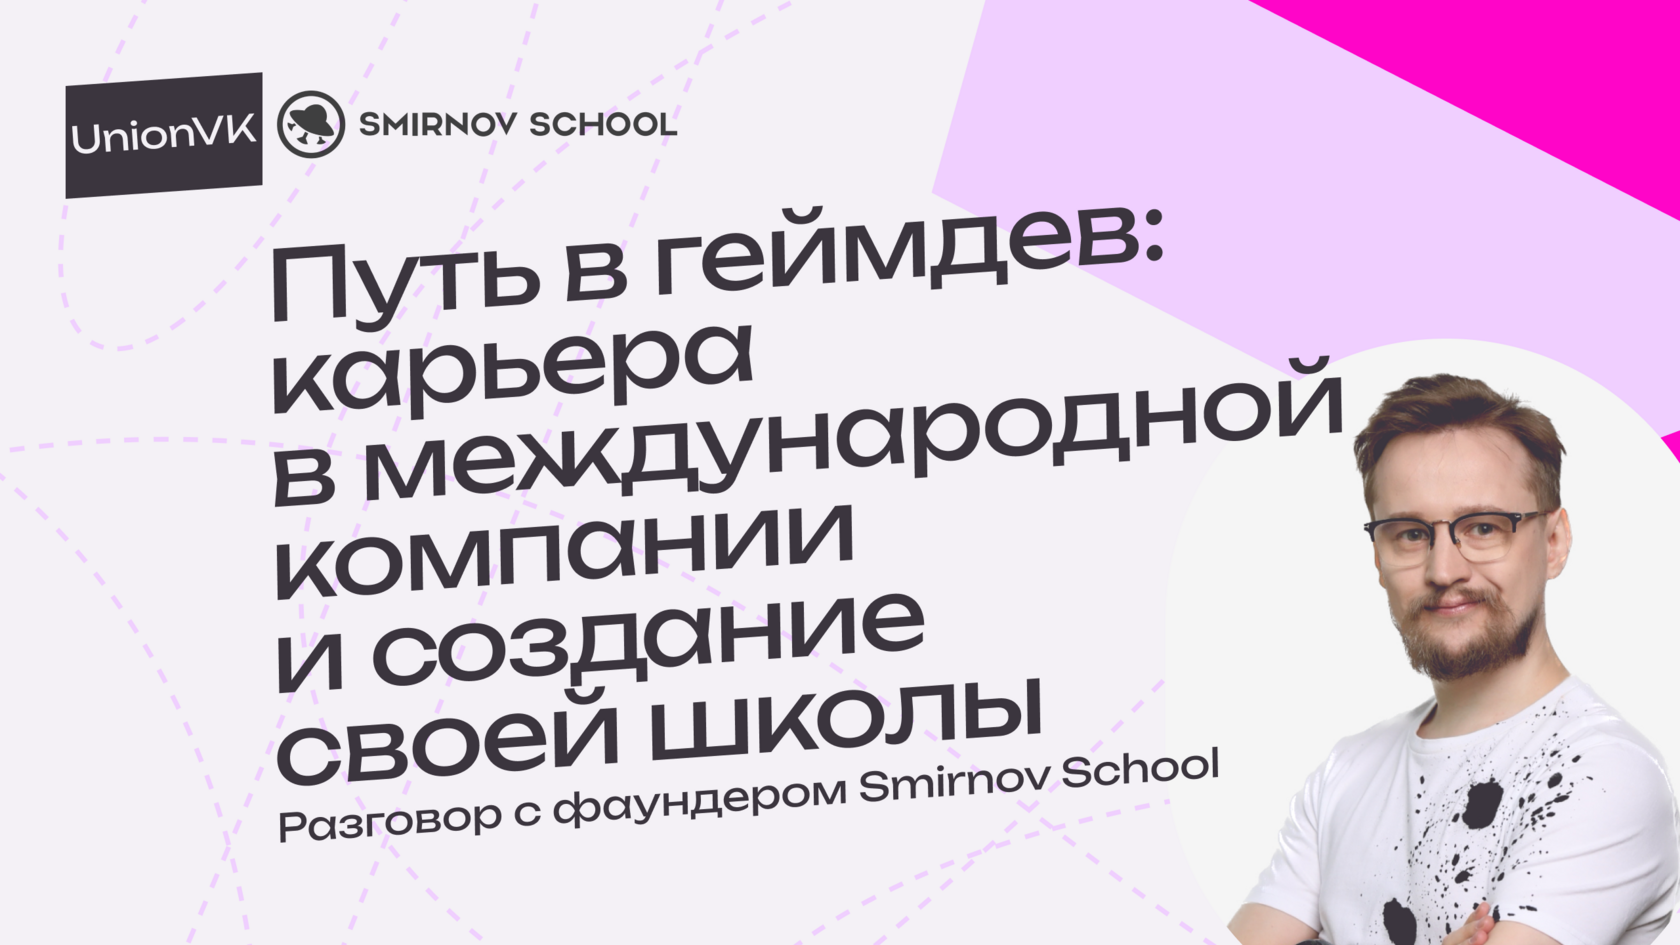 Иван Смирнов про геймдев и Smirnov School для Union VK